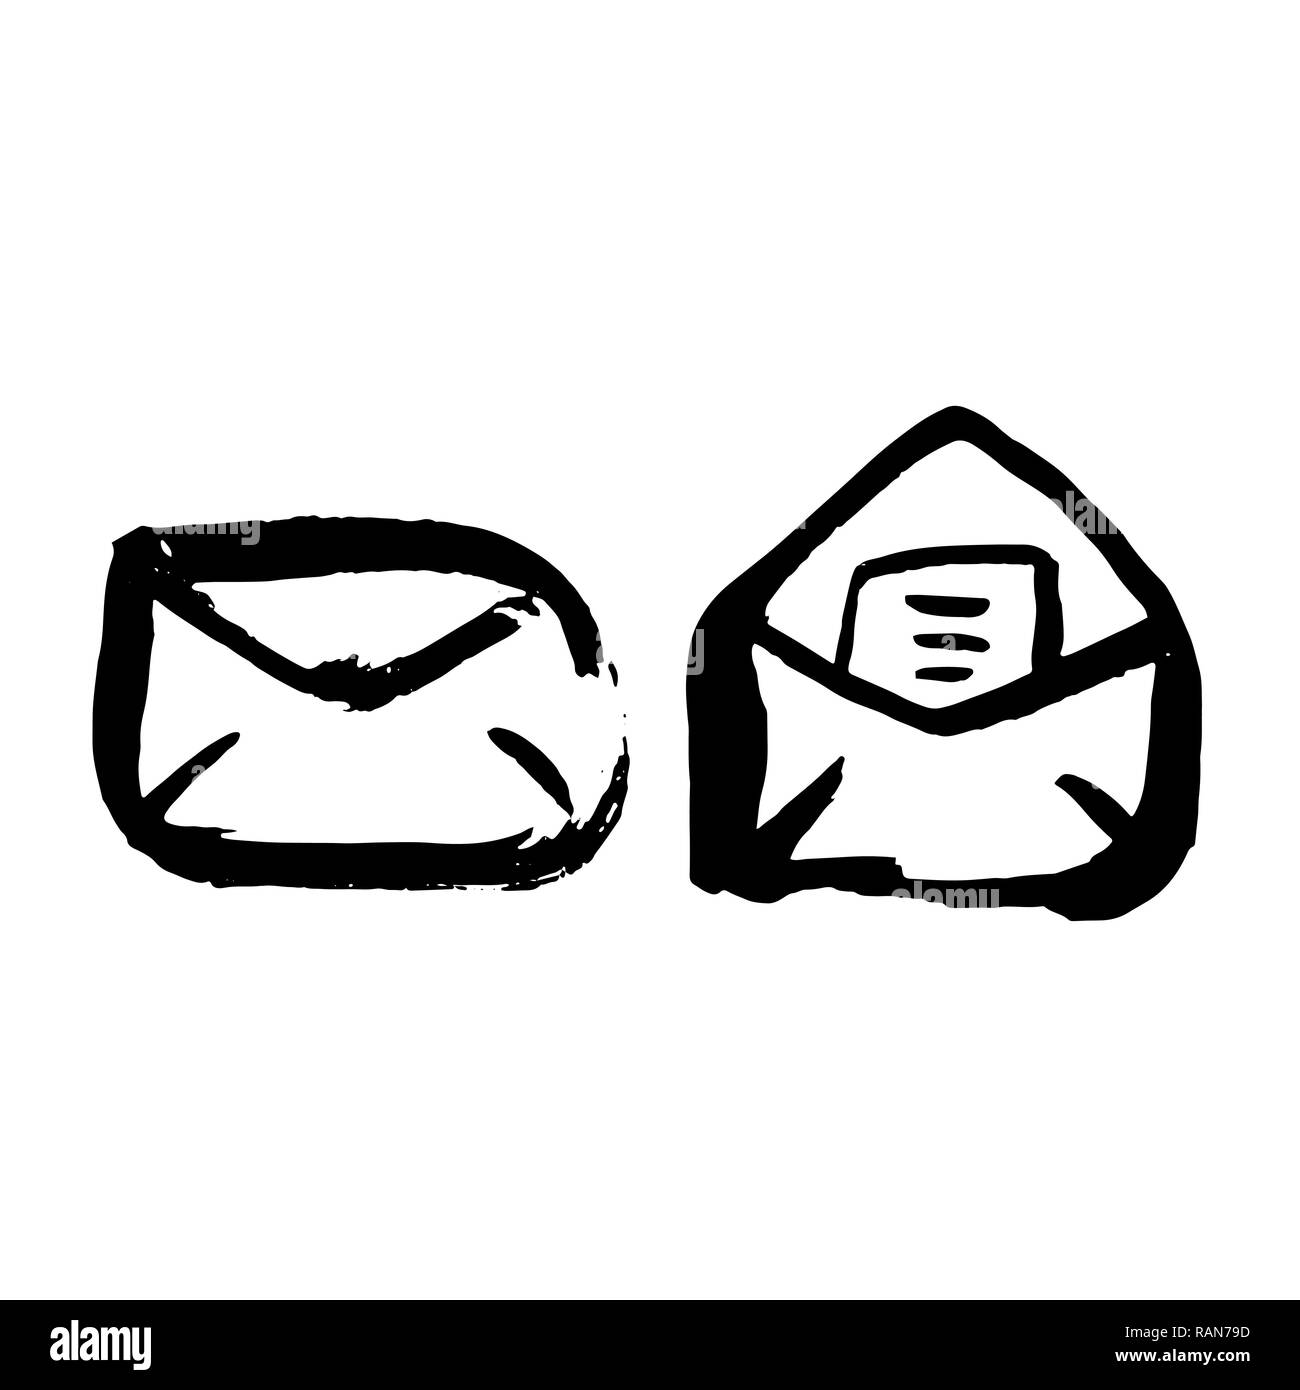 Mail grunge icon set. Lettere di inchiostro spazzola illustrazione vettoriale. Illustrazione Vettoriale